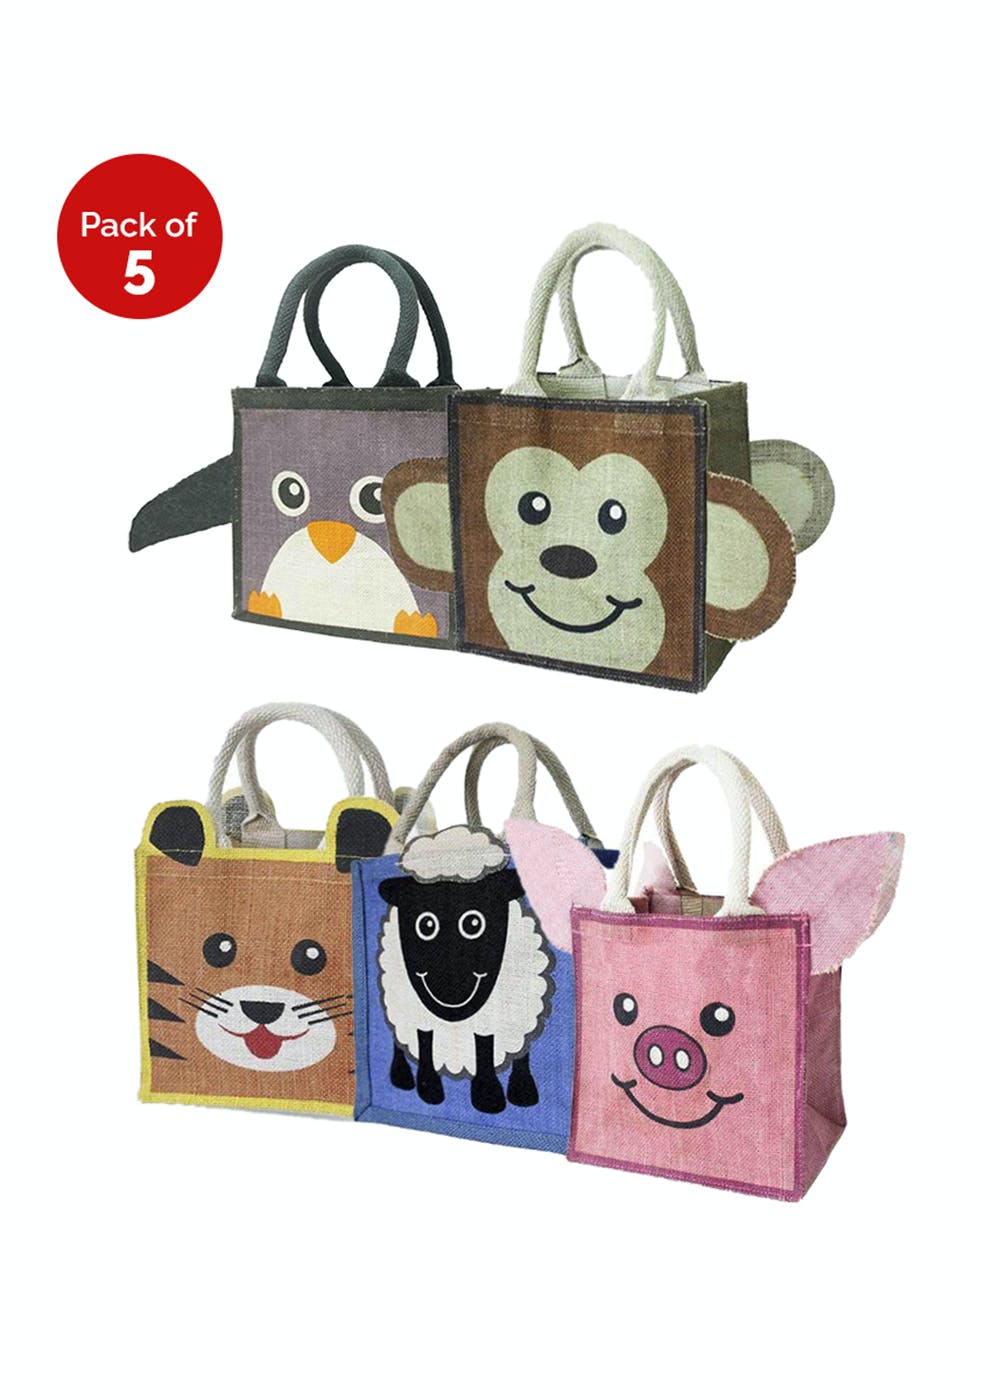 Get Animal Jute Bag Bundle - Tiger, Pig, Sheep, Penguin & Monkey (Pack of  5) at ₹ 900 | LBB Shop